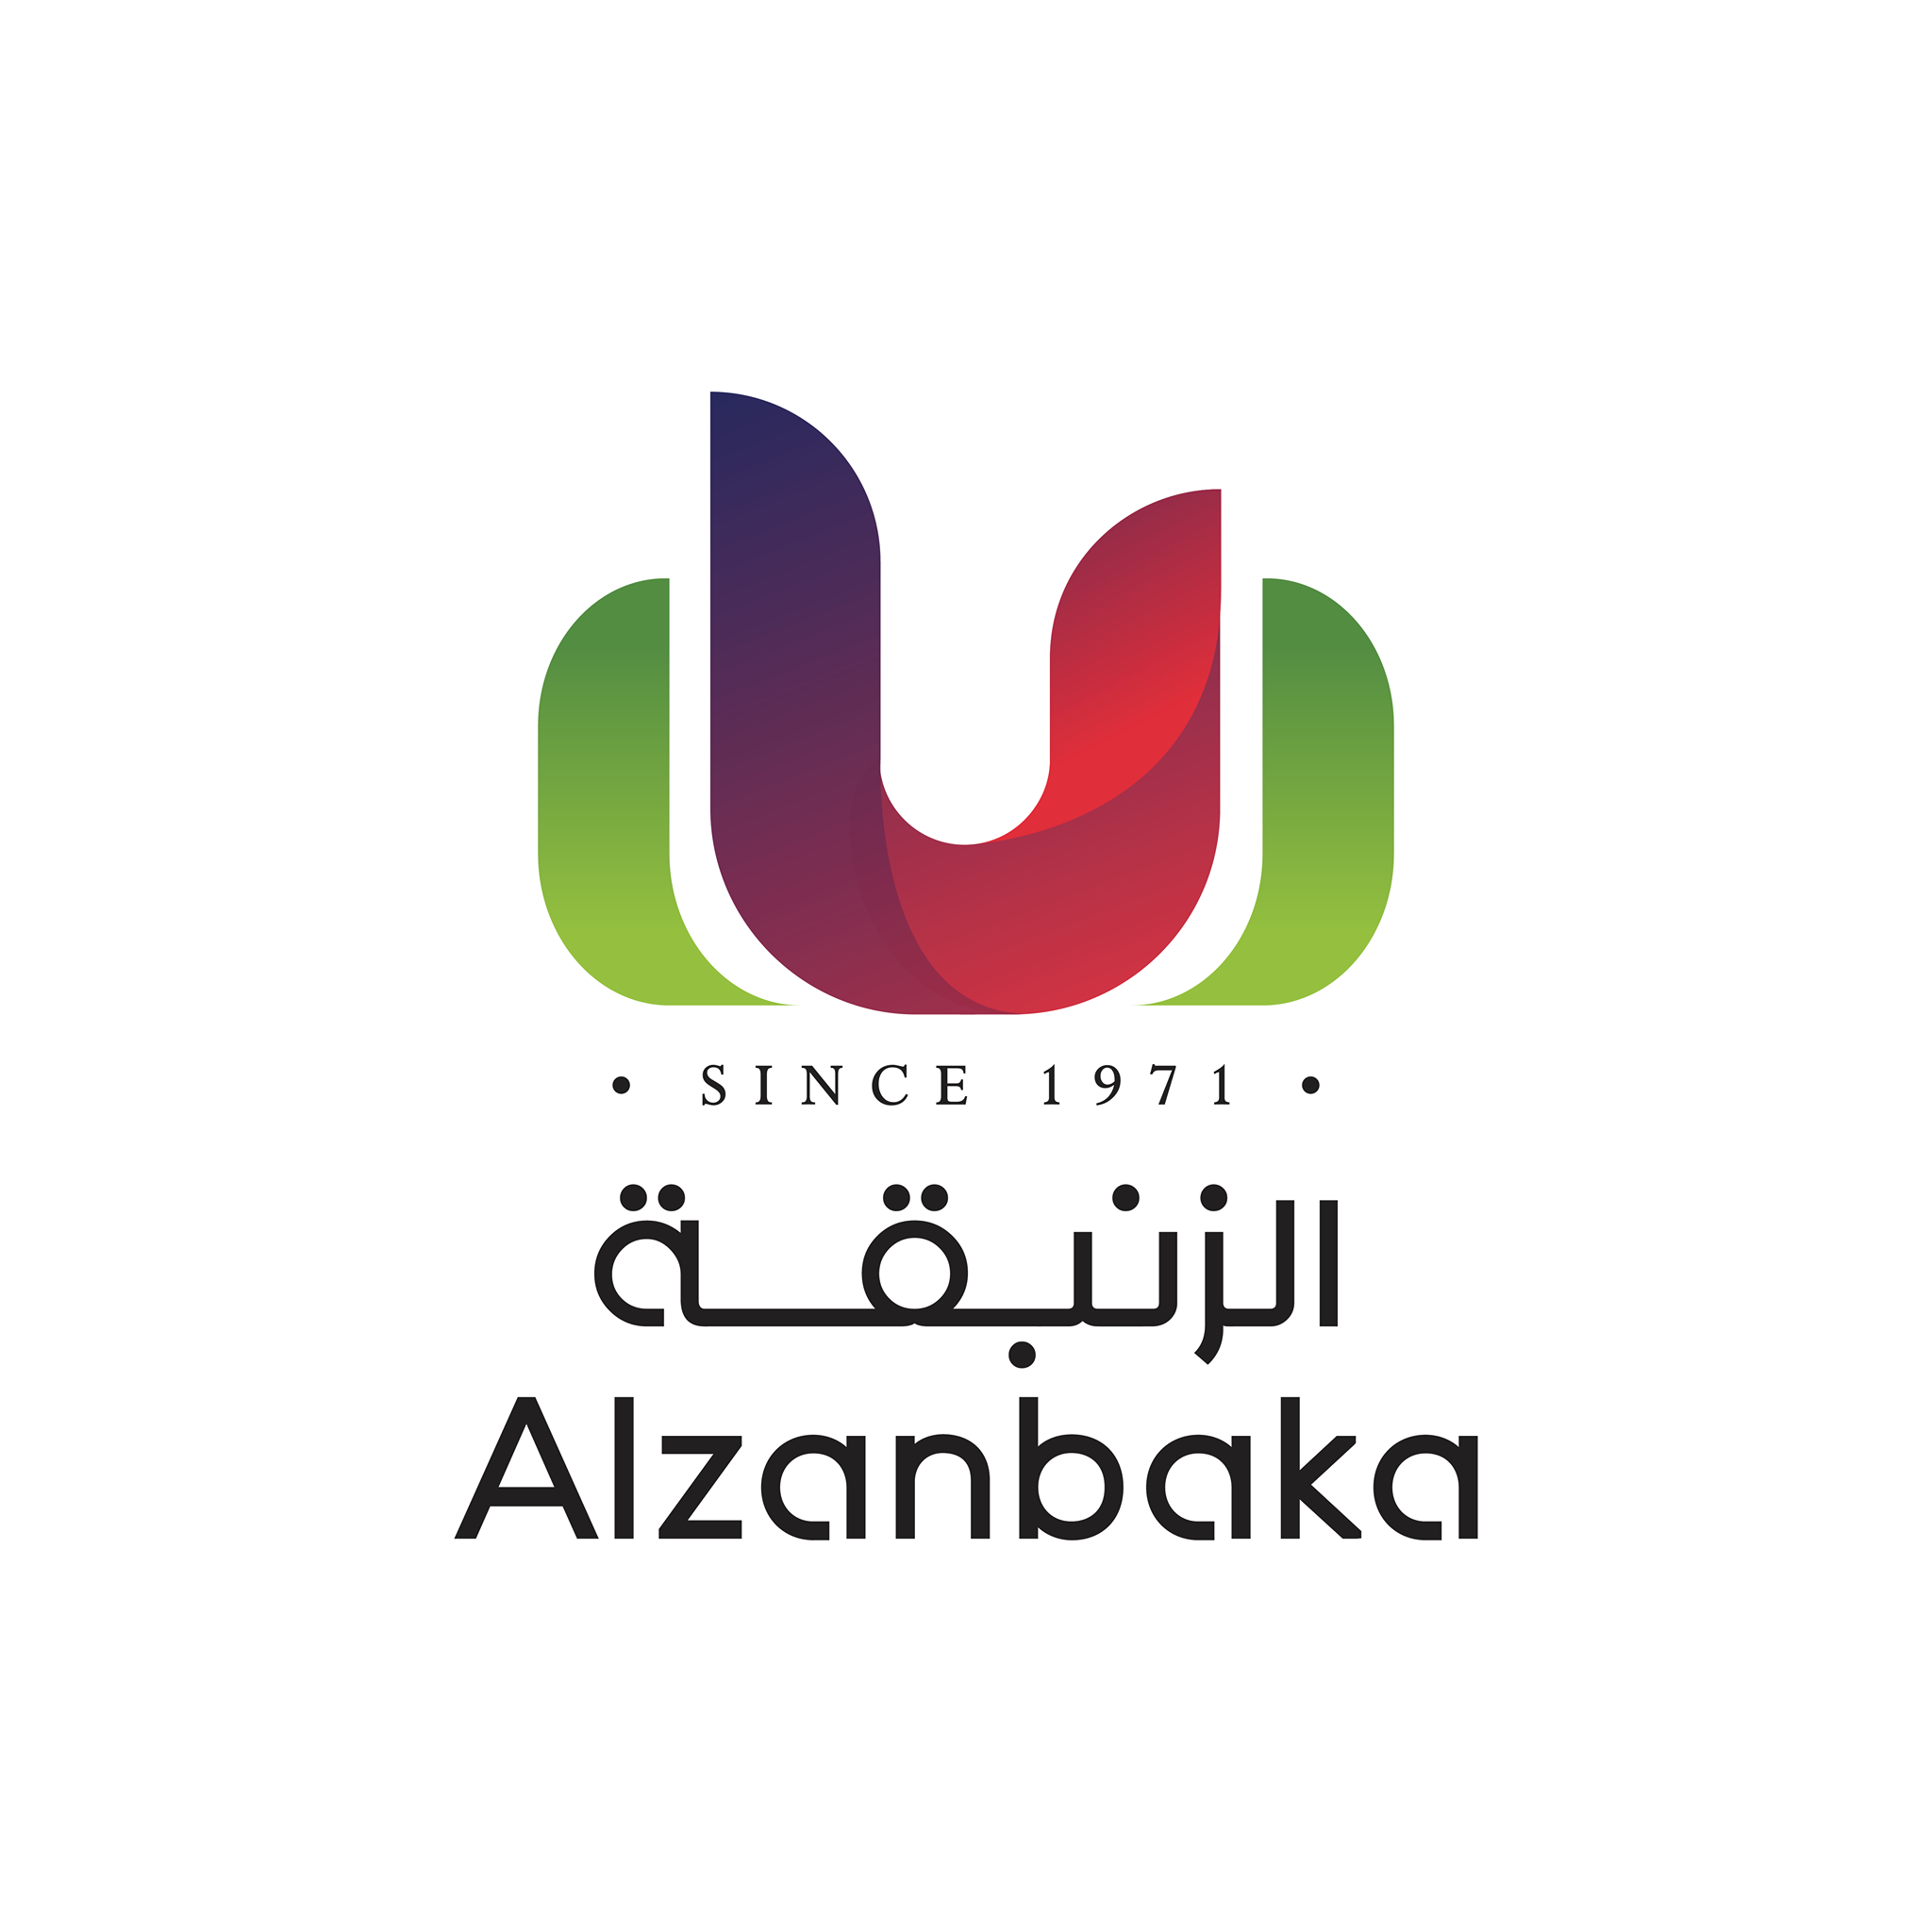 Alzanbaka Est